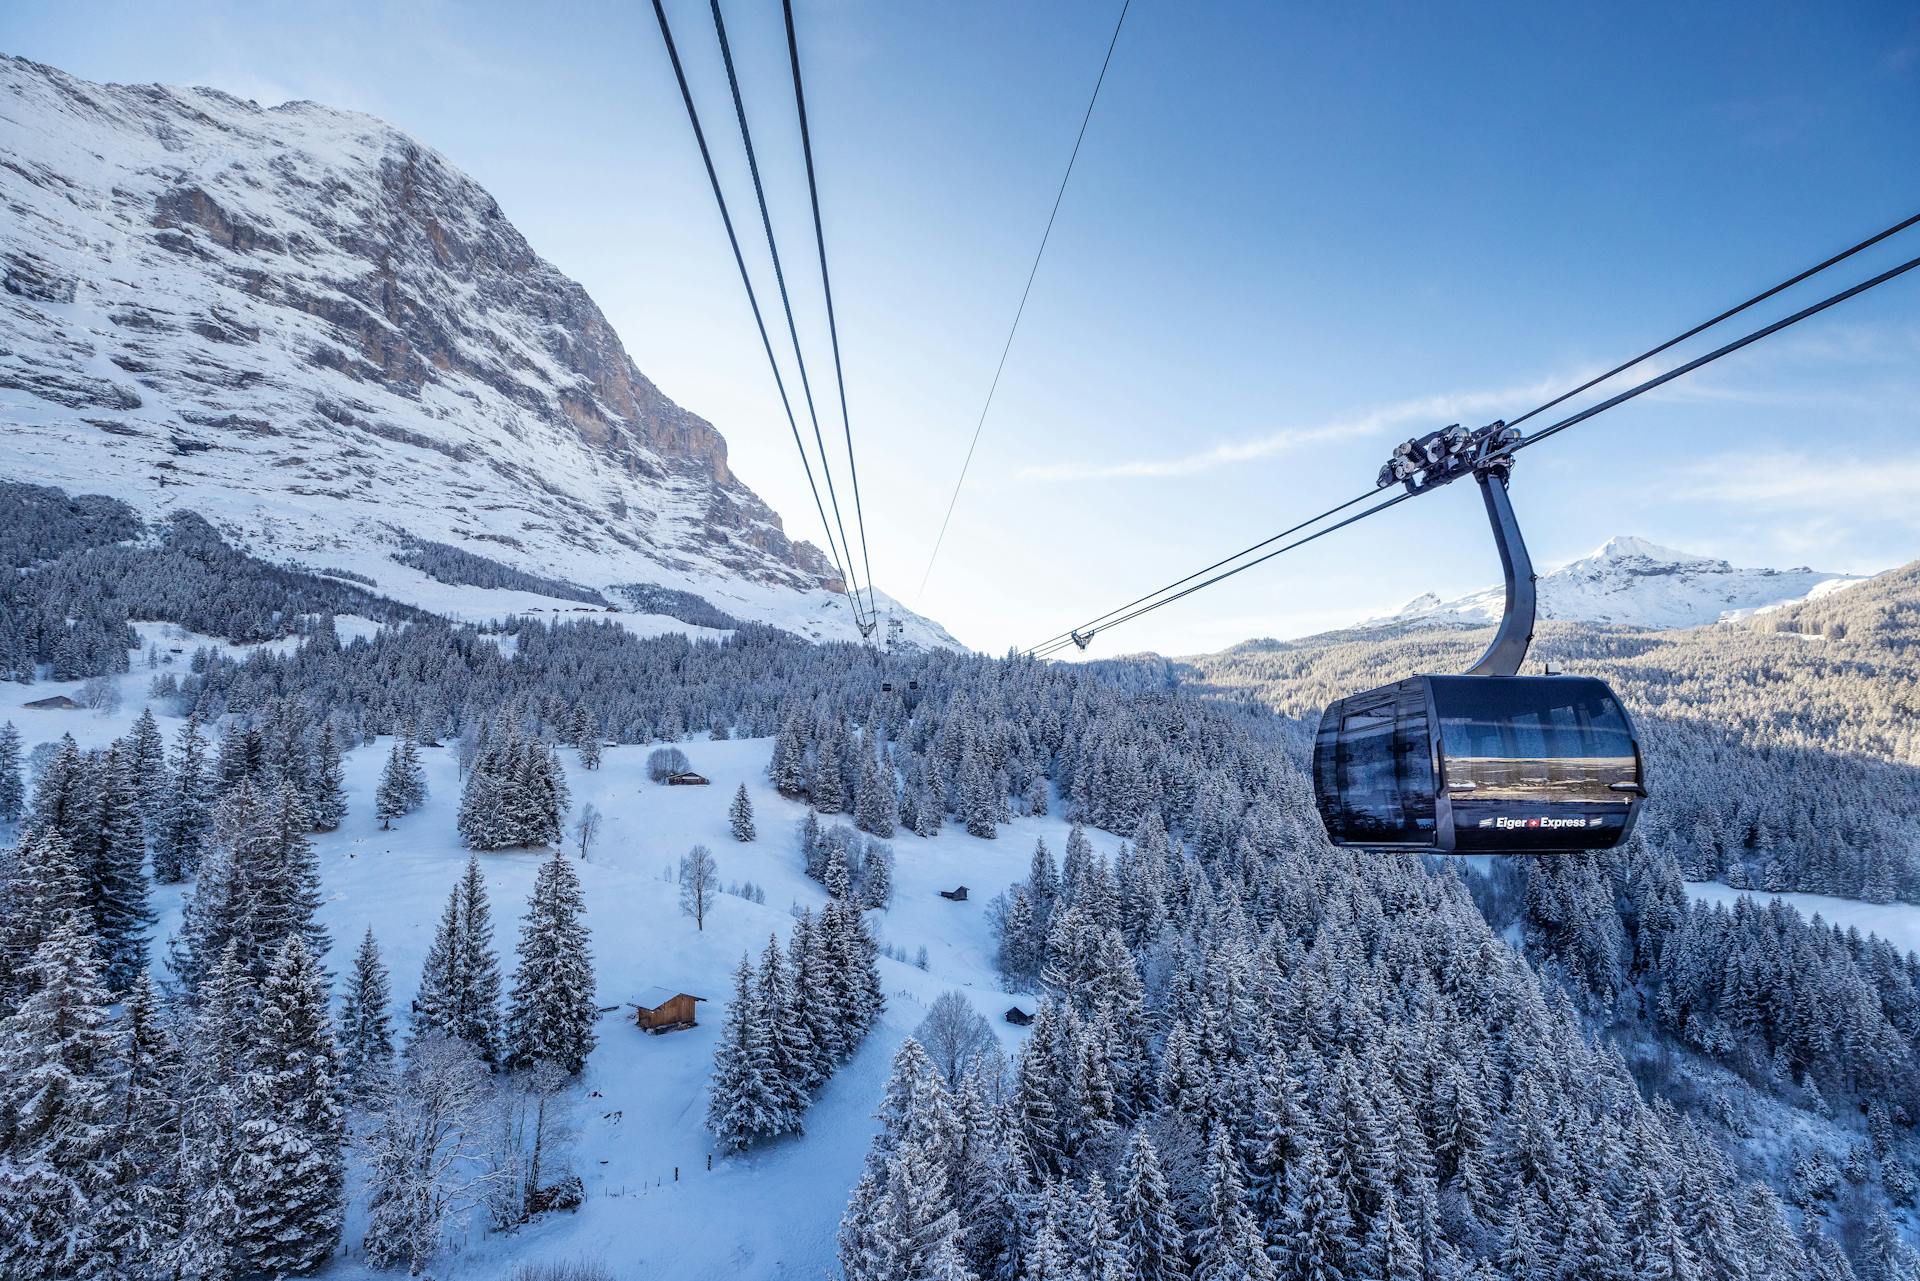 Gondola taking skiiers to top of mountain